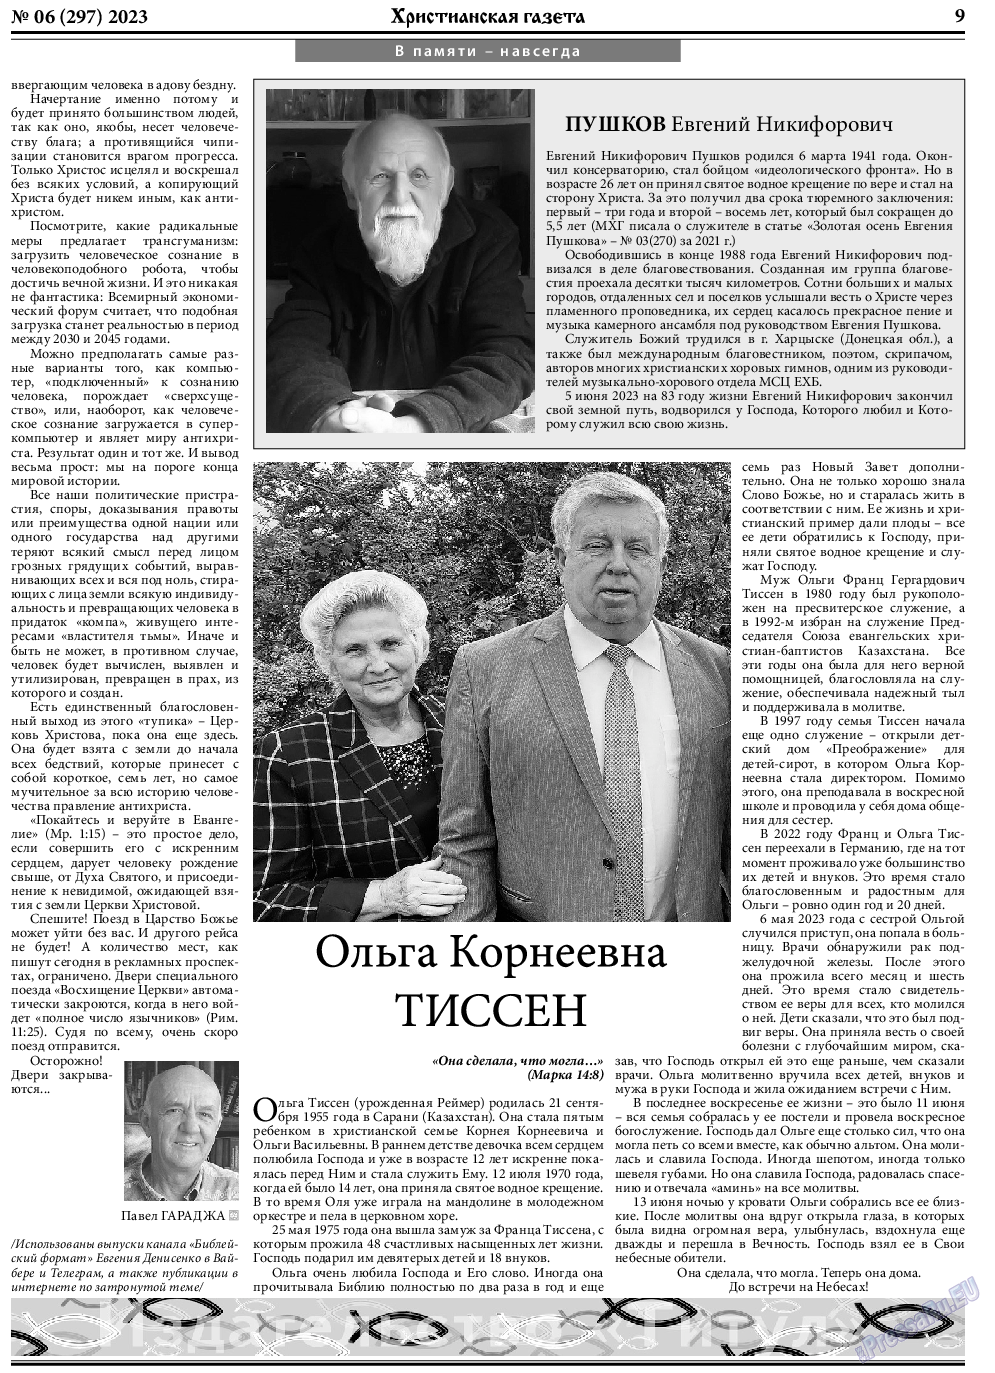 Христианская газета, газета. 2023 №6 стр.9